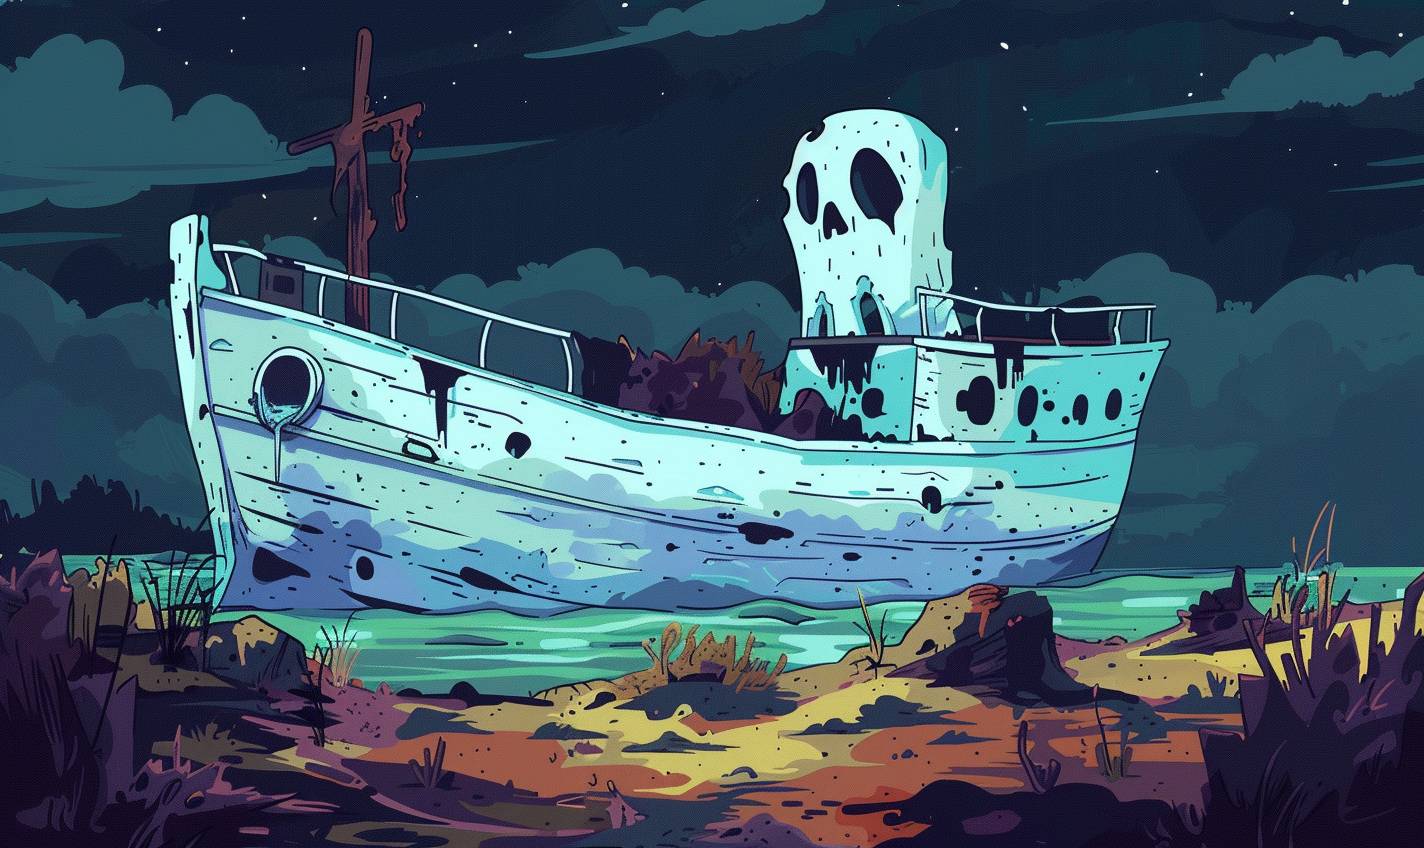 Allie Broshのスタイルで、幽霊船が幽霊のいる岸に漂着する